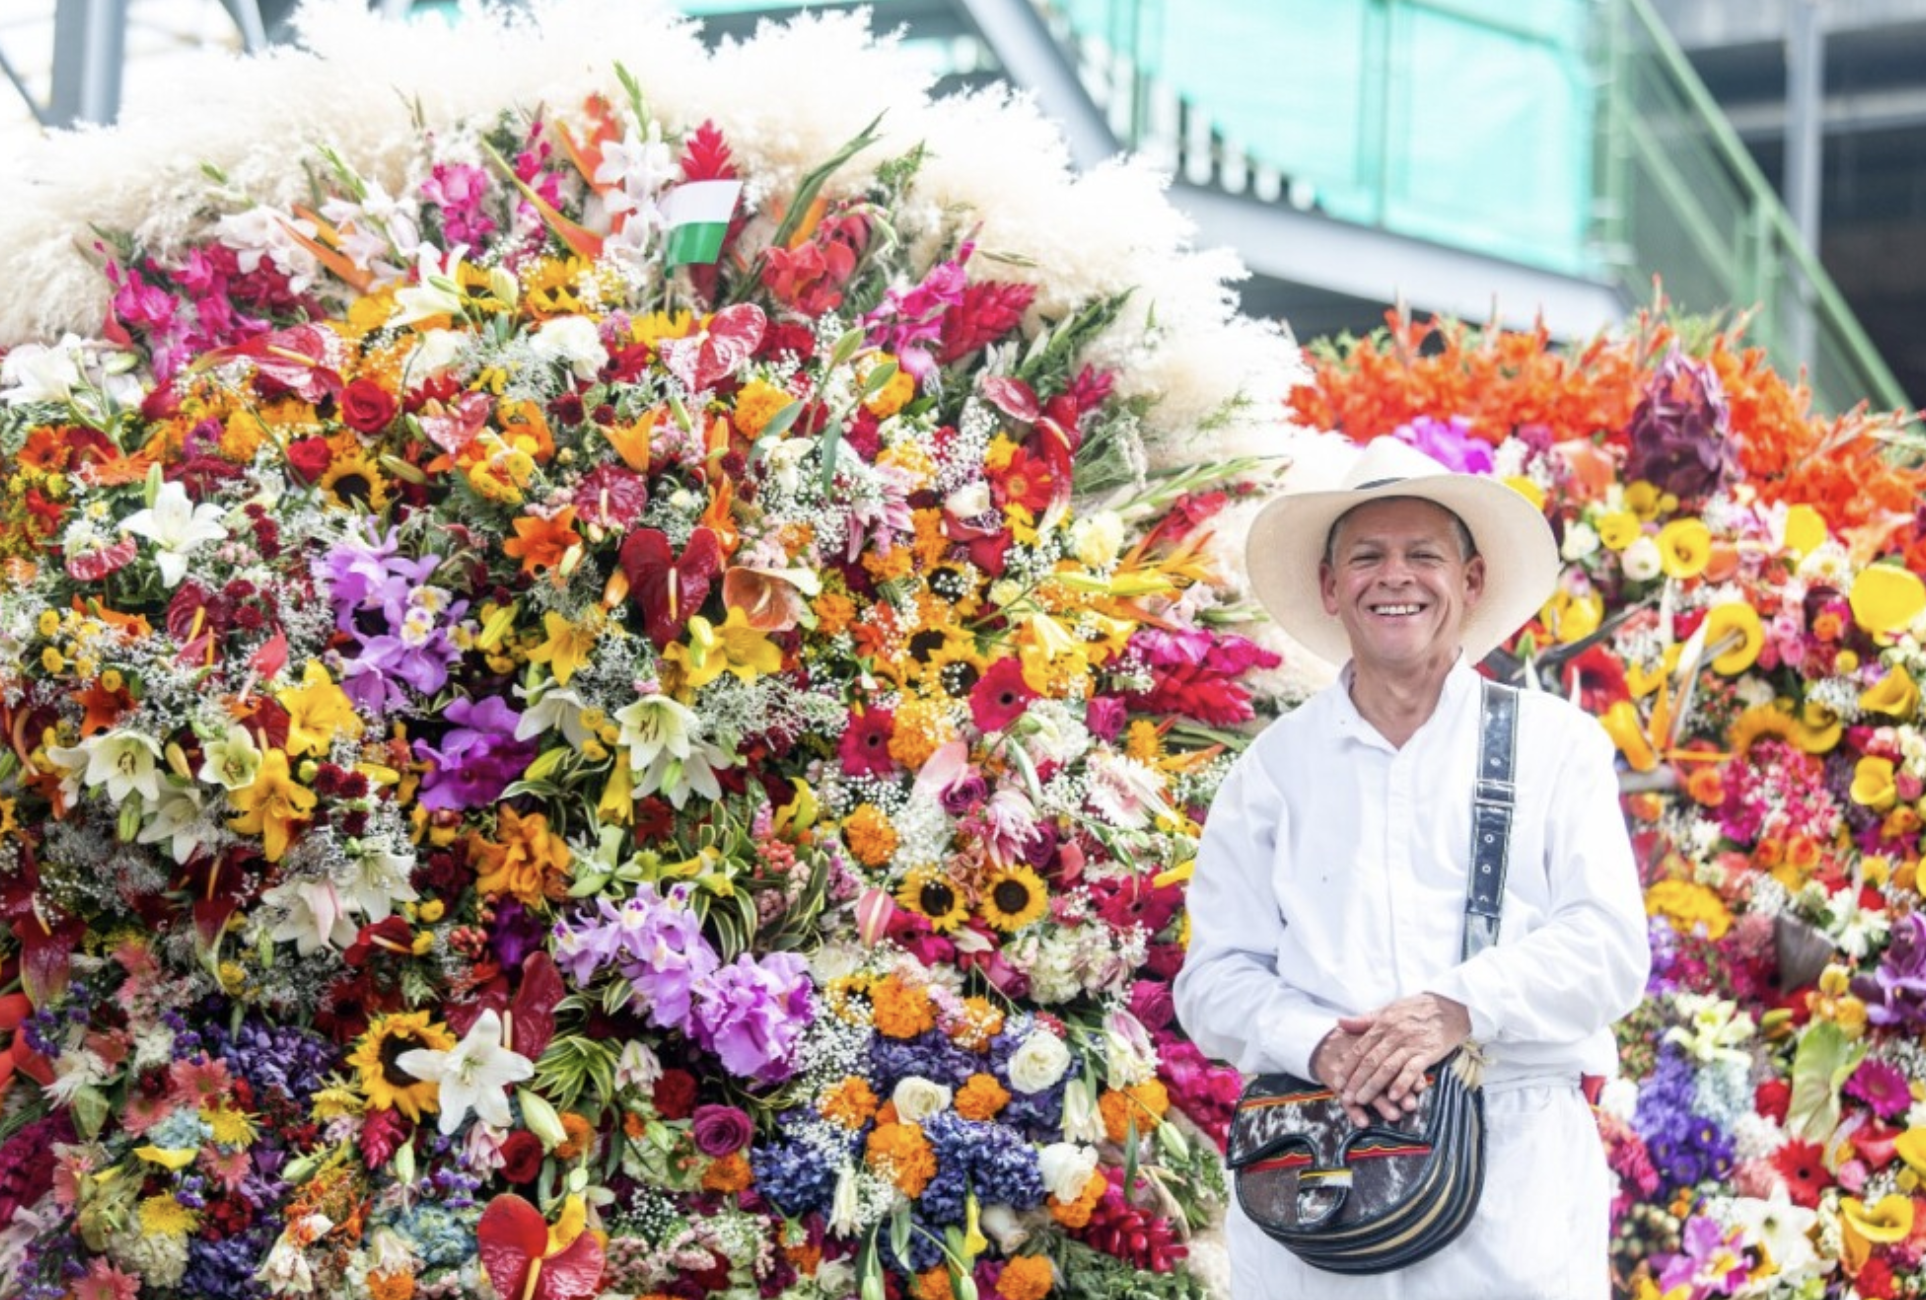 Ultimate Guide for Medellin's Flower Festival 2023